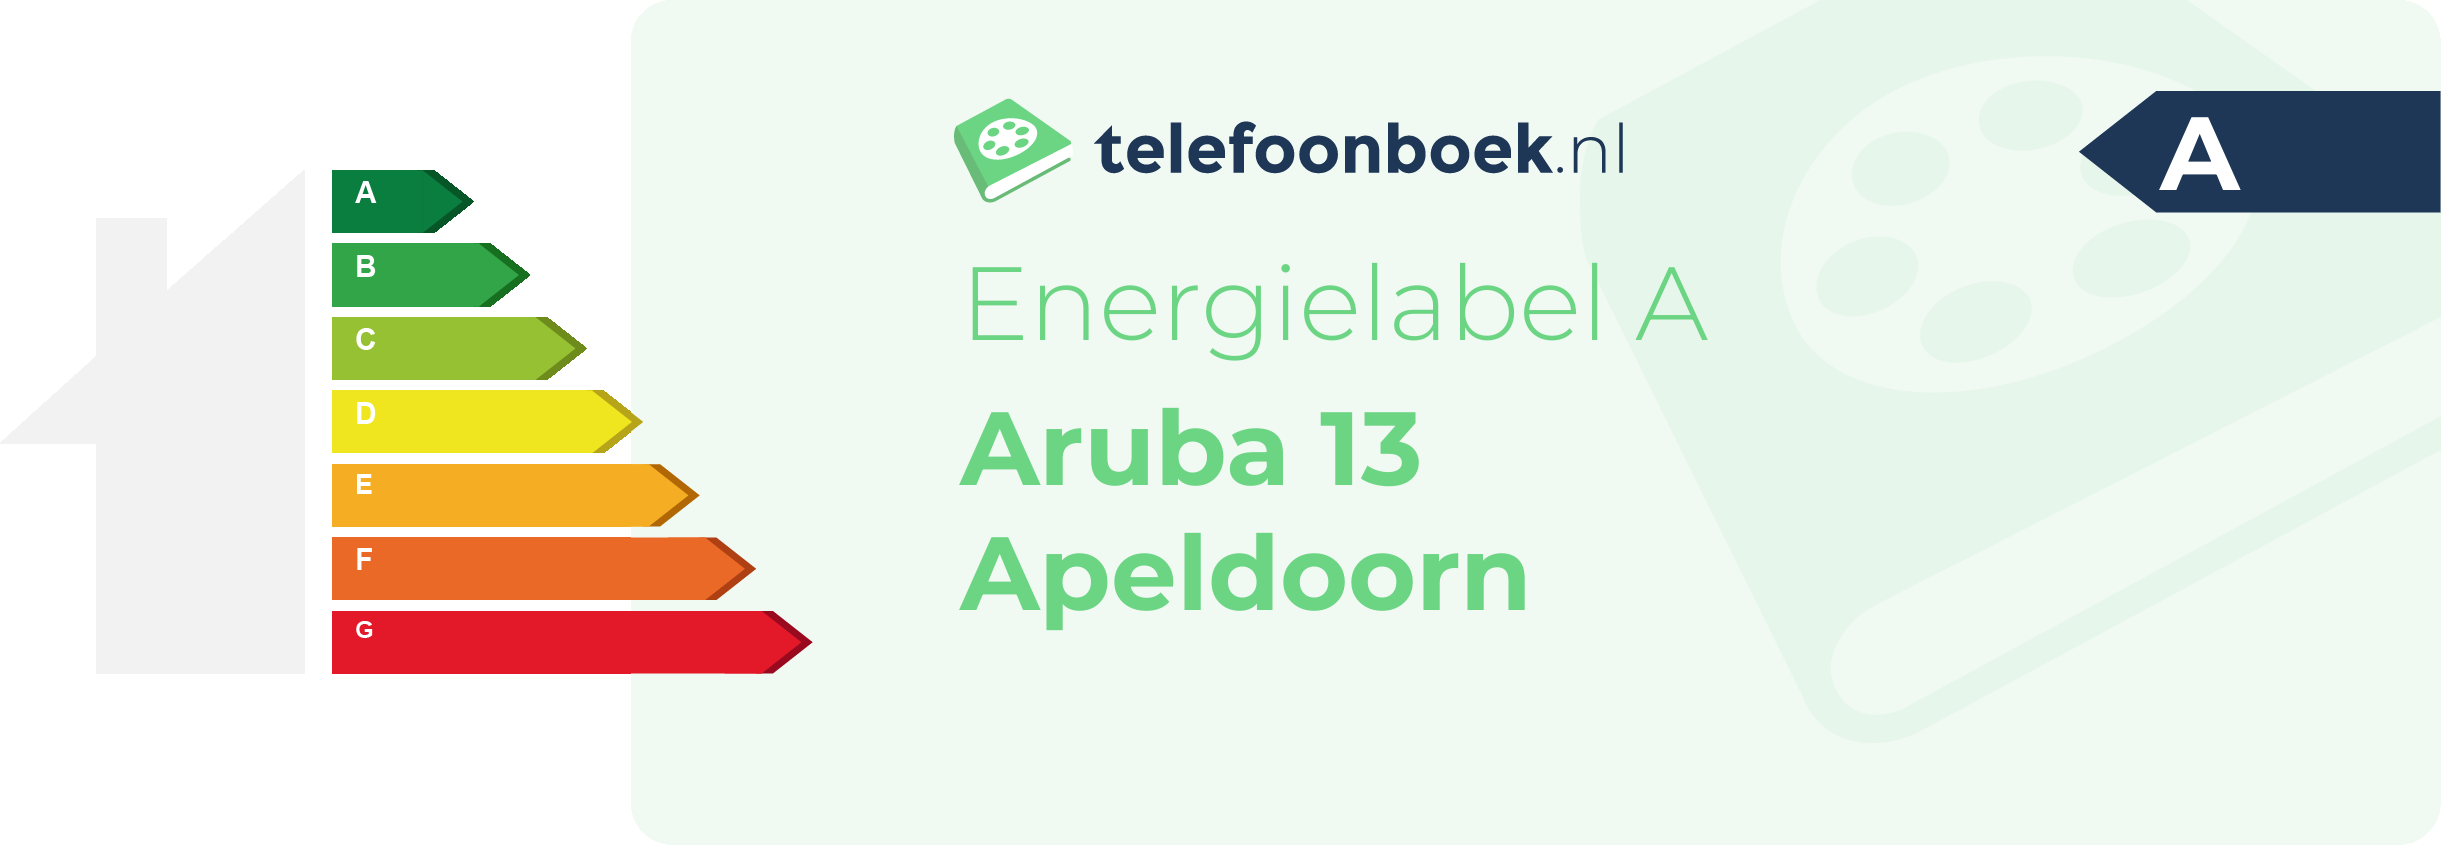 Energielabel Aruba 13 Apeldoorn